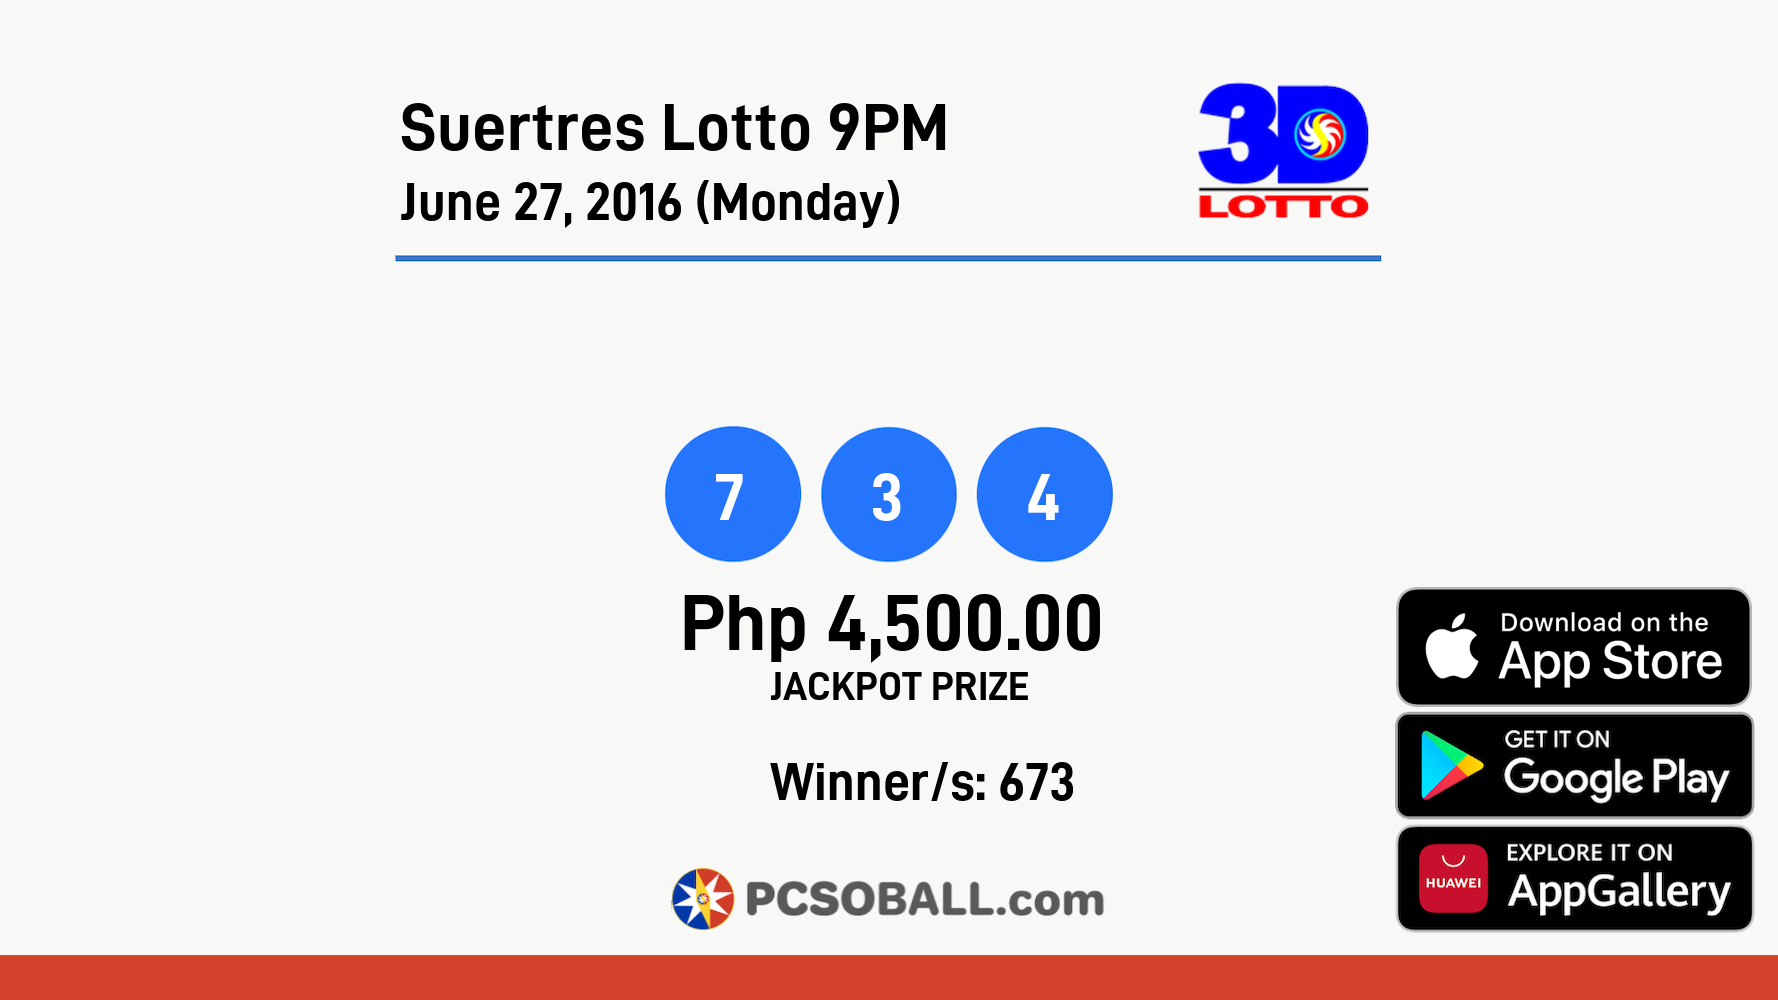 Suertres Lotto 9PM June 27, 2016 (Monday) Result